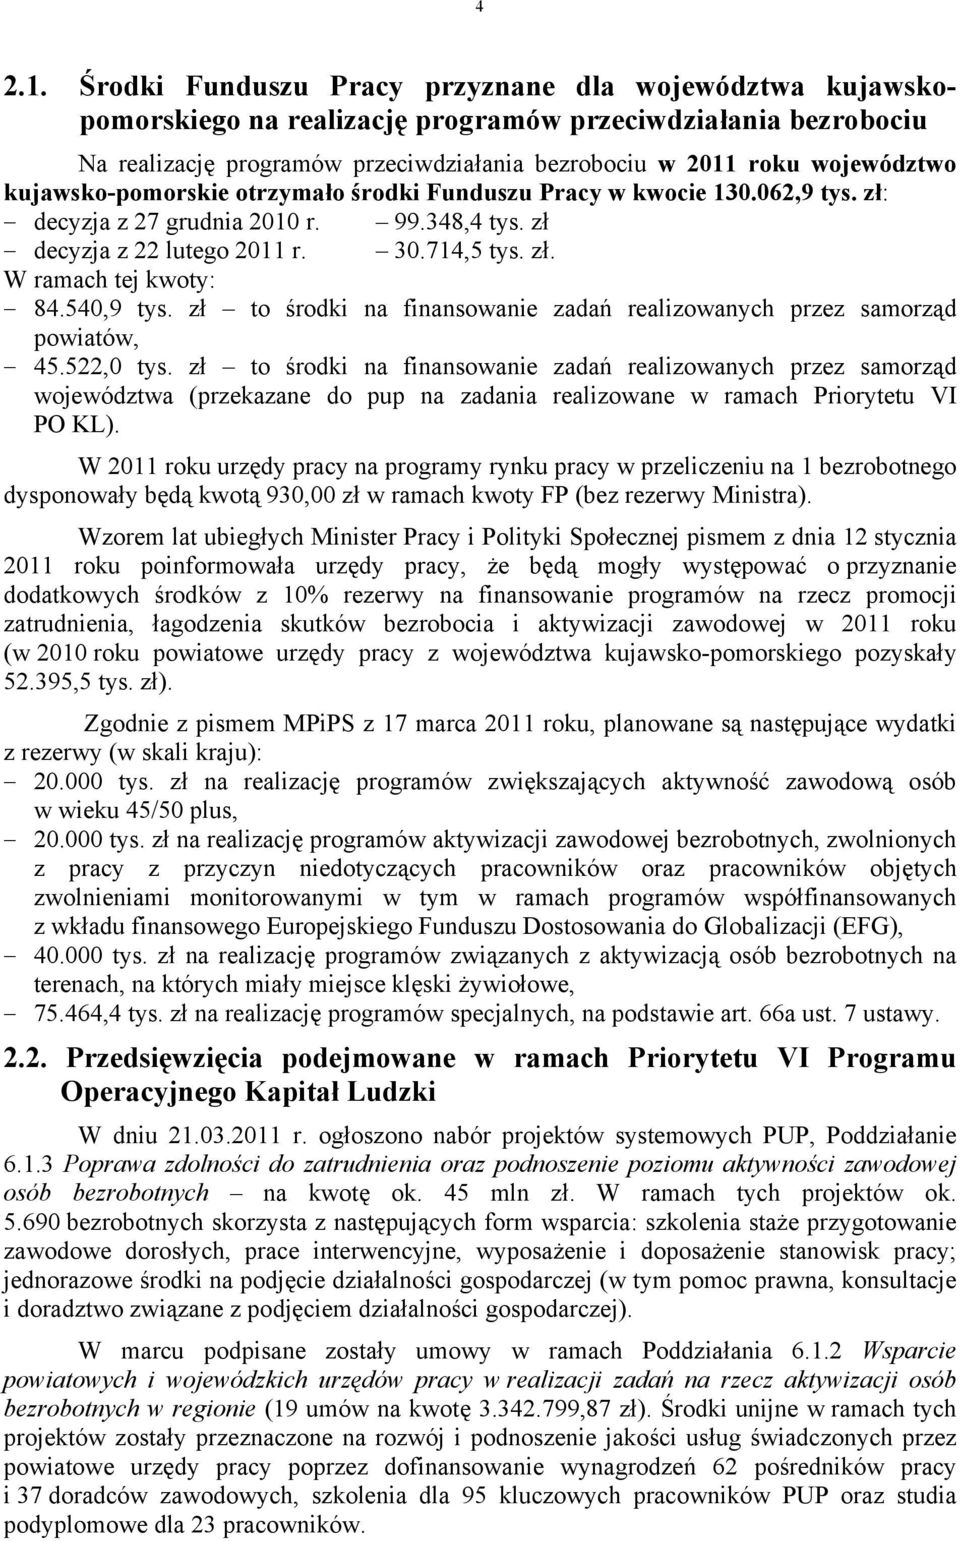 kujawsko-pomorskie otrzymało środki Funduszu Pracy w kwocie 130.062,9 tys. zł: decyzja z 27 grudnia 2010 r. 99.348,4 tys. zł decyzja z 22 lutego 2011 r. 30.714,5 tys. zł. W ramach tej kwoty: 84.